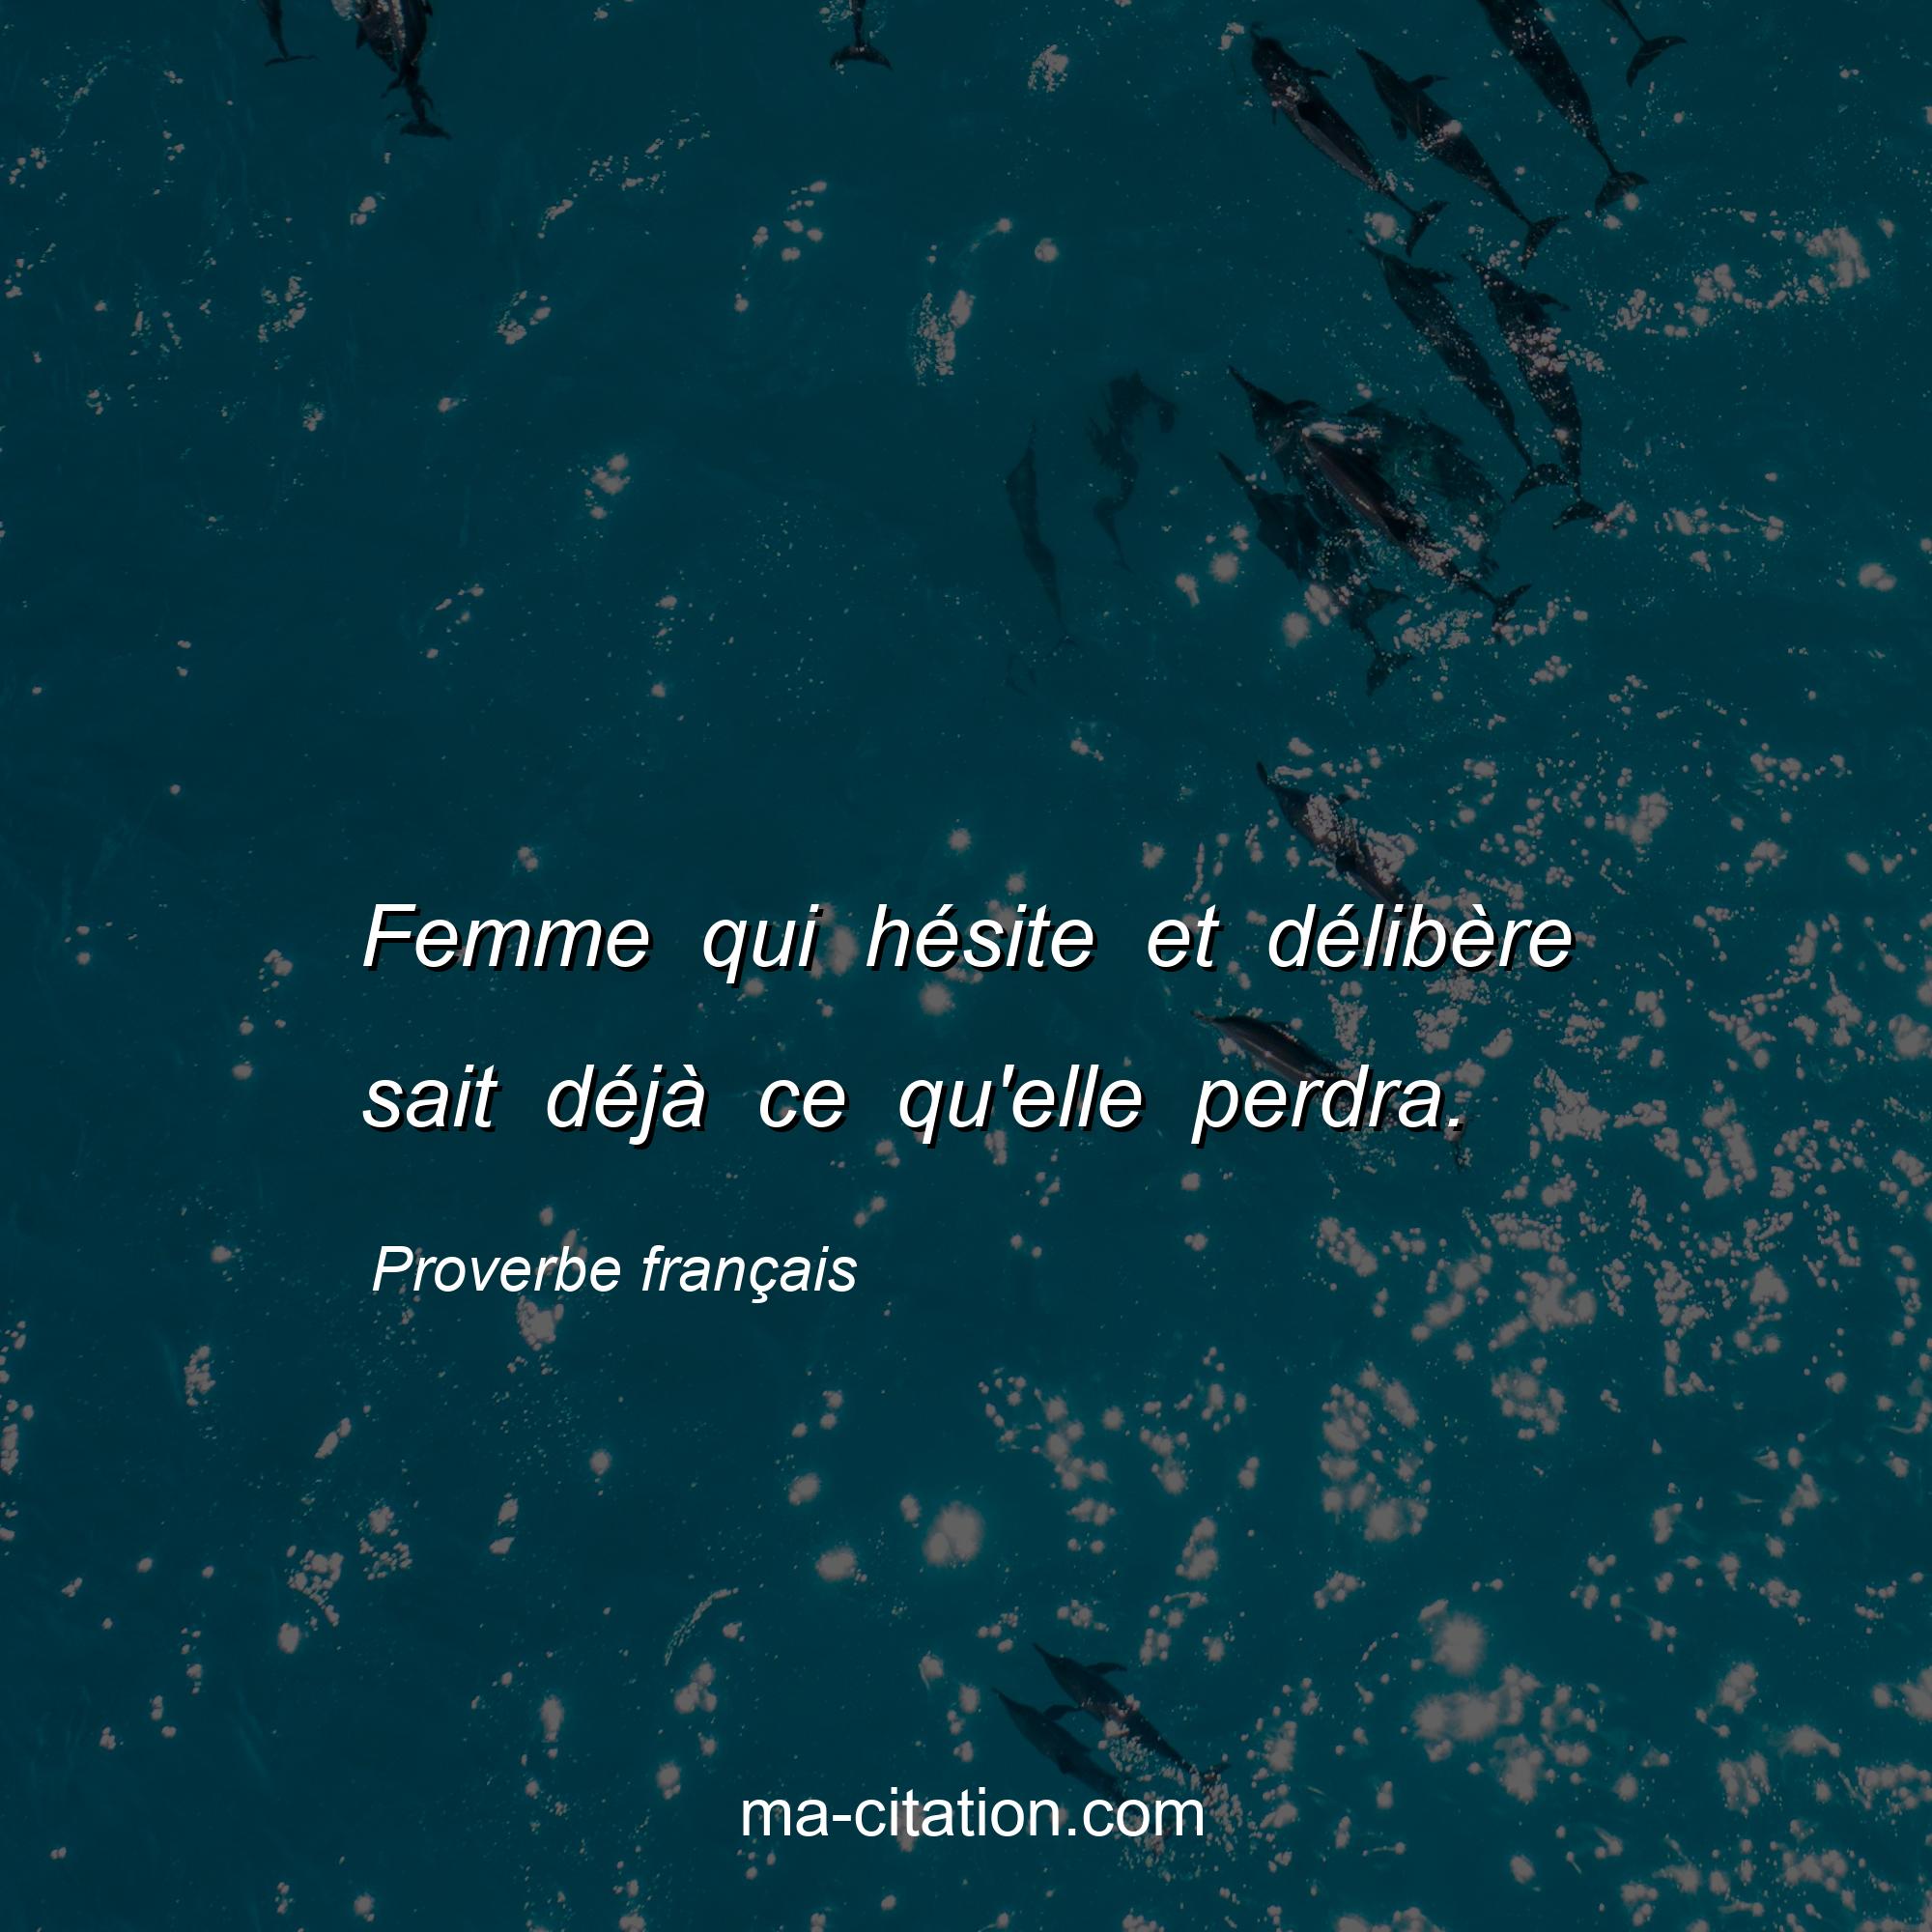 Proverbe français : Femme qui hésite et délibère sait déjà ce qu'elle perdra.